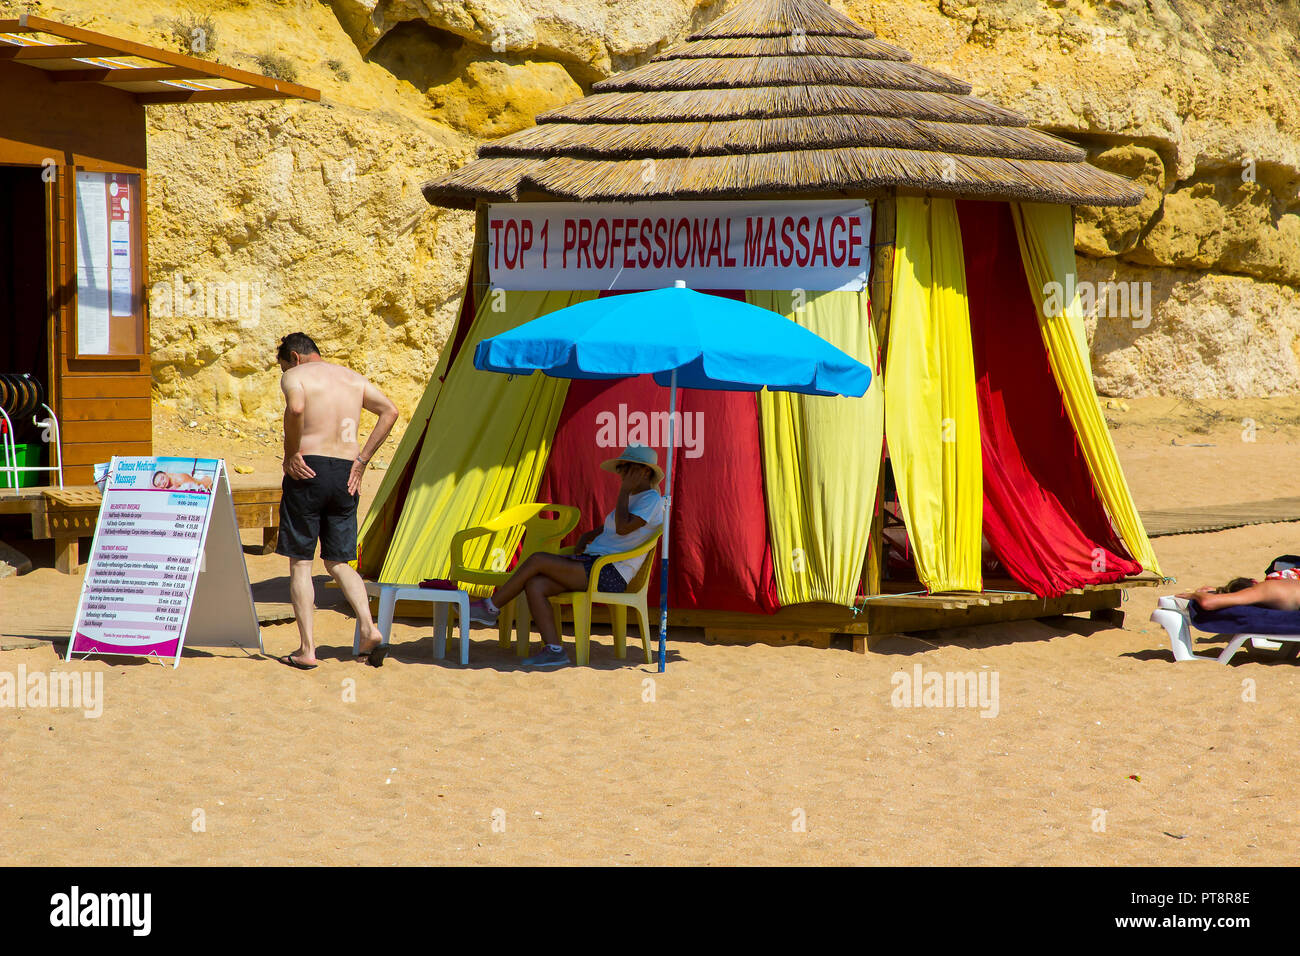 28. September 2018 eine professionelle Massage Zelt am Strand Praia do Inatel Strand in der Nähe der alten Stadt Albufeira Portugal an einem heißen sonnigen Tag Stockfoto